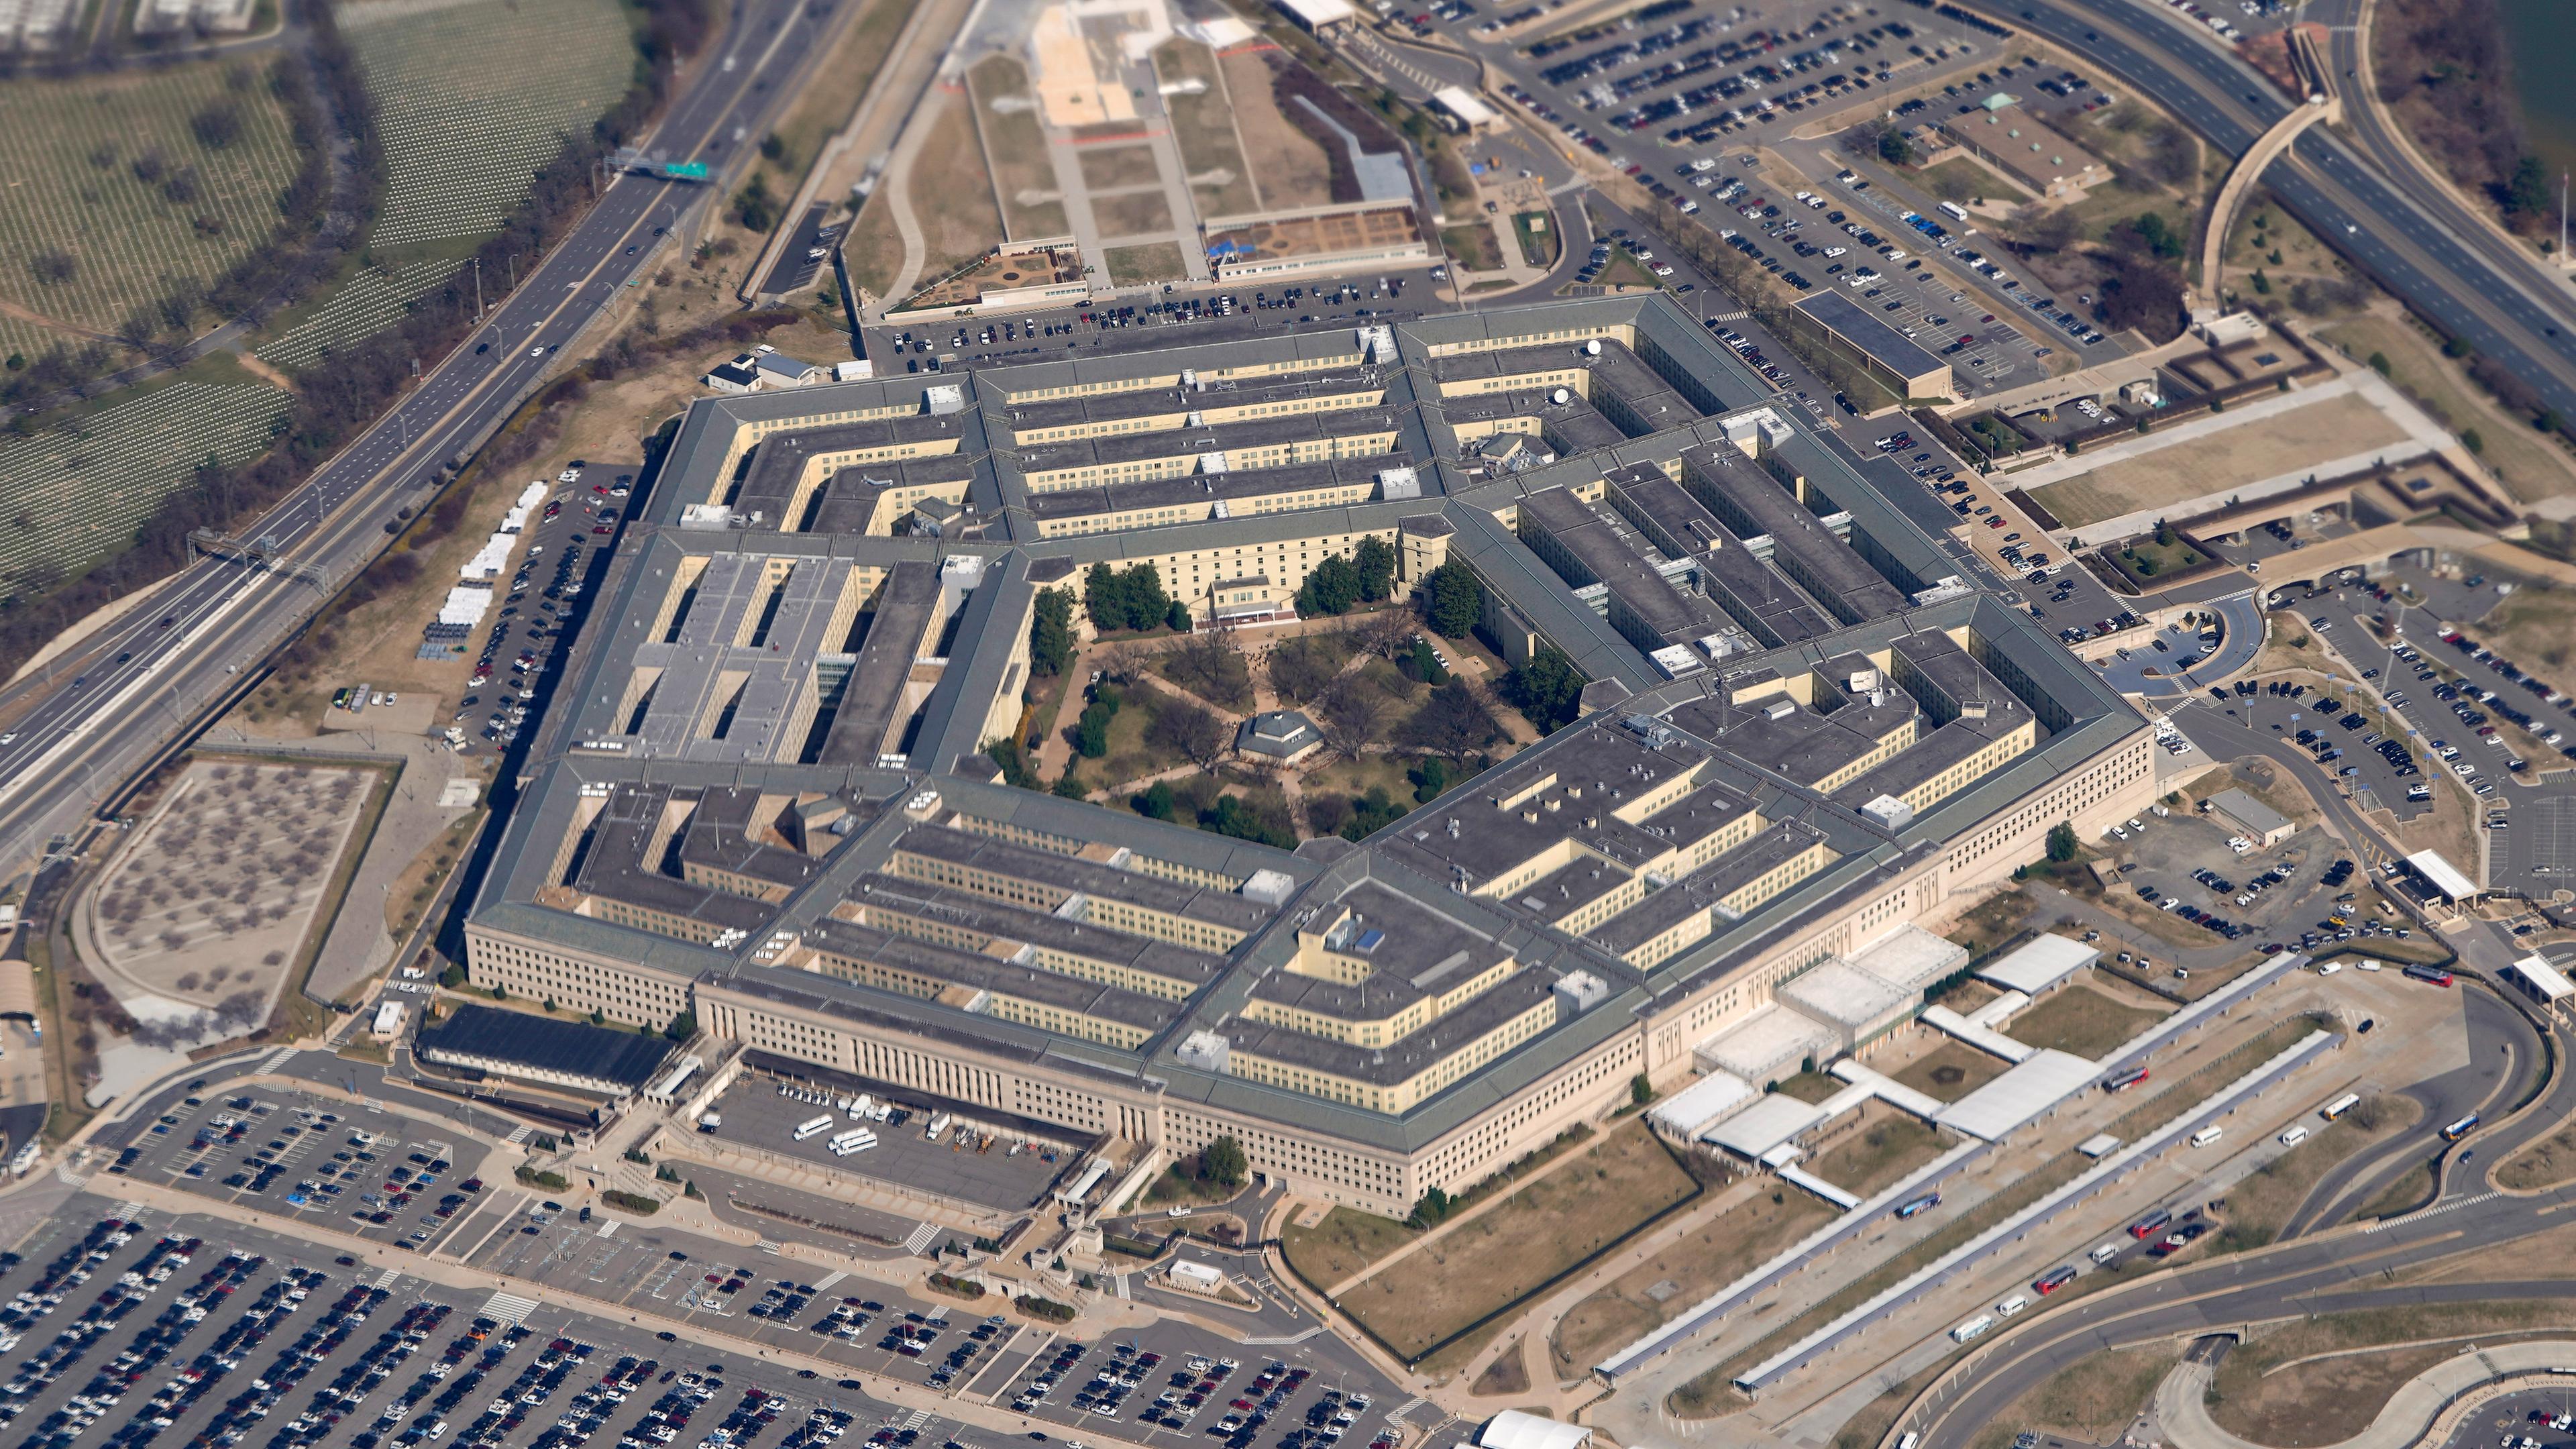 Das Pentagon, Sitz des US-Verteidigungsministeriums, aufgenommen am 15.06.2005